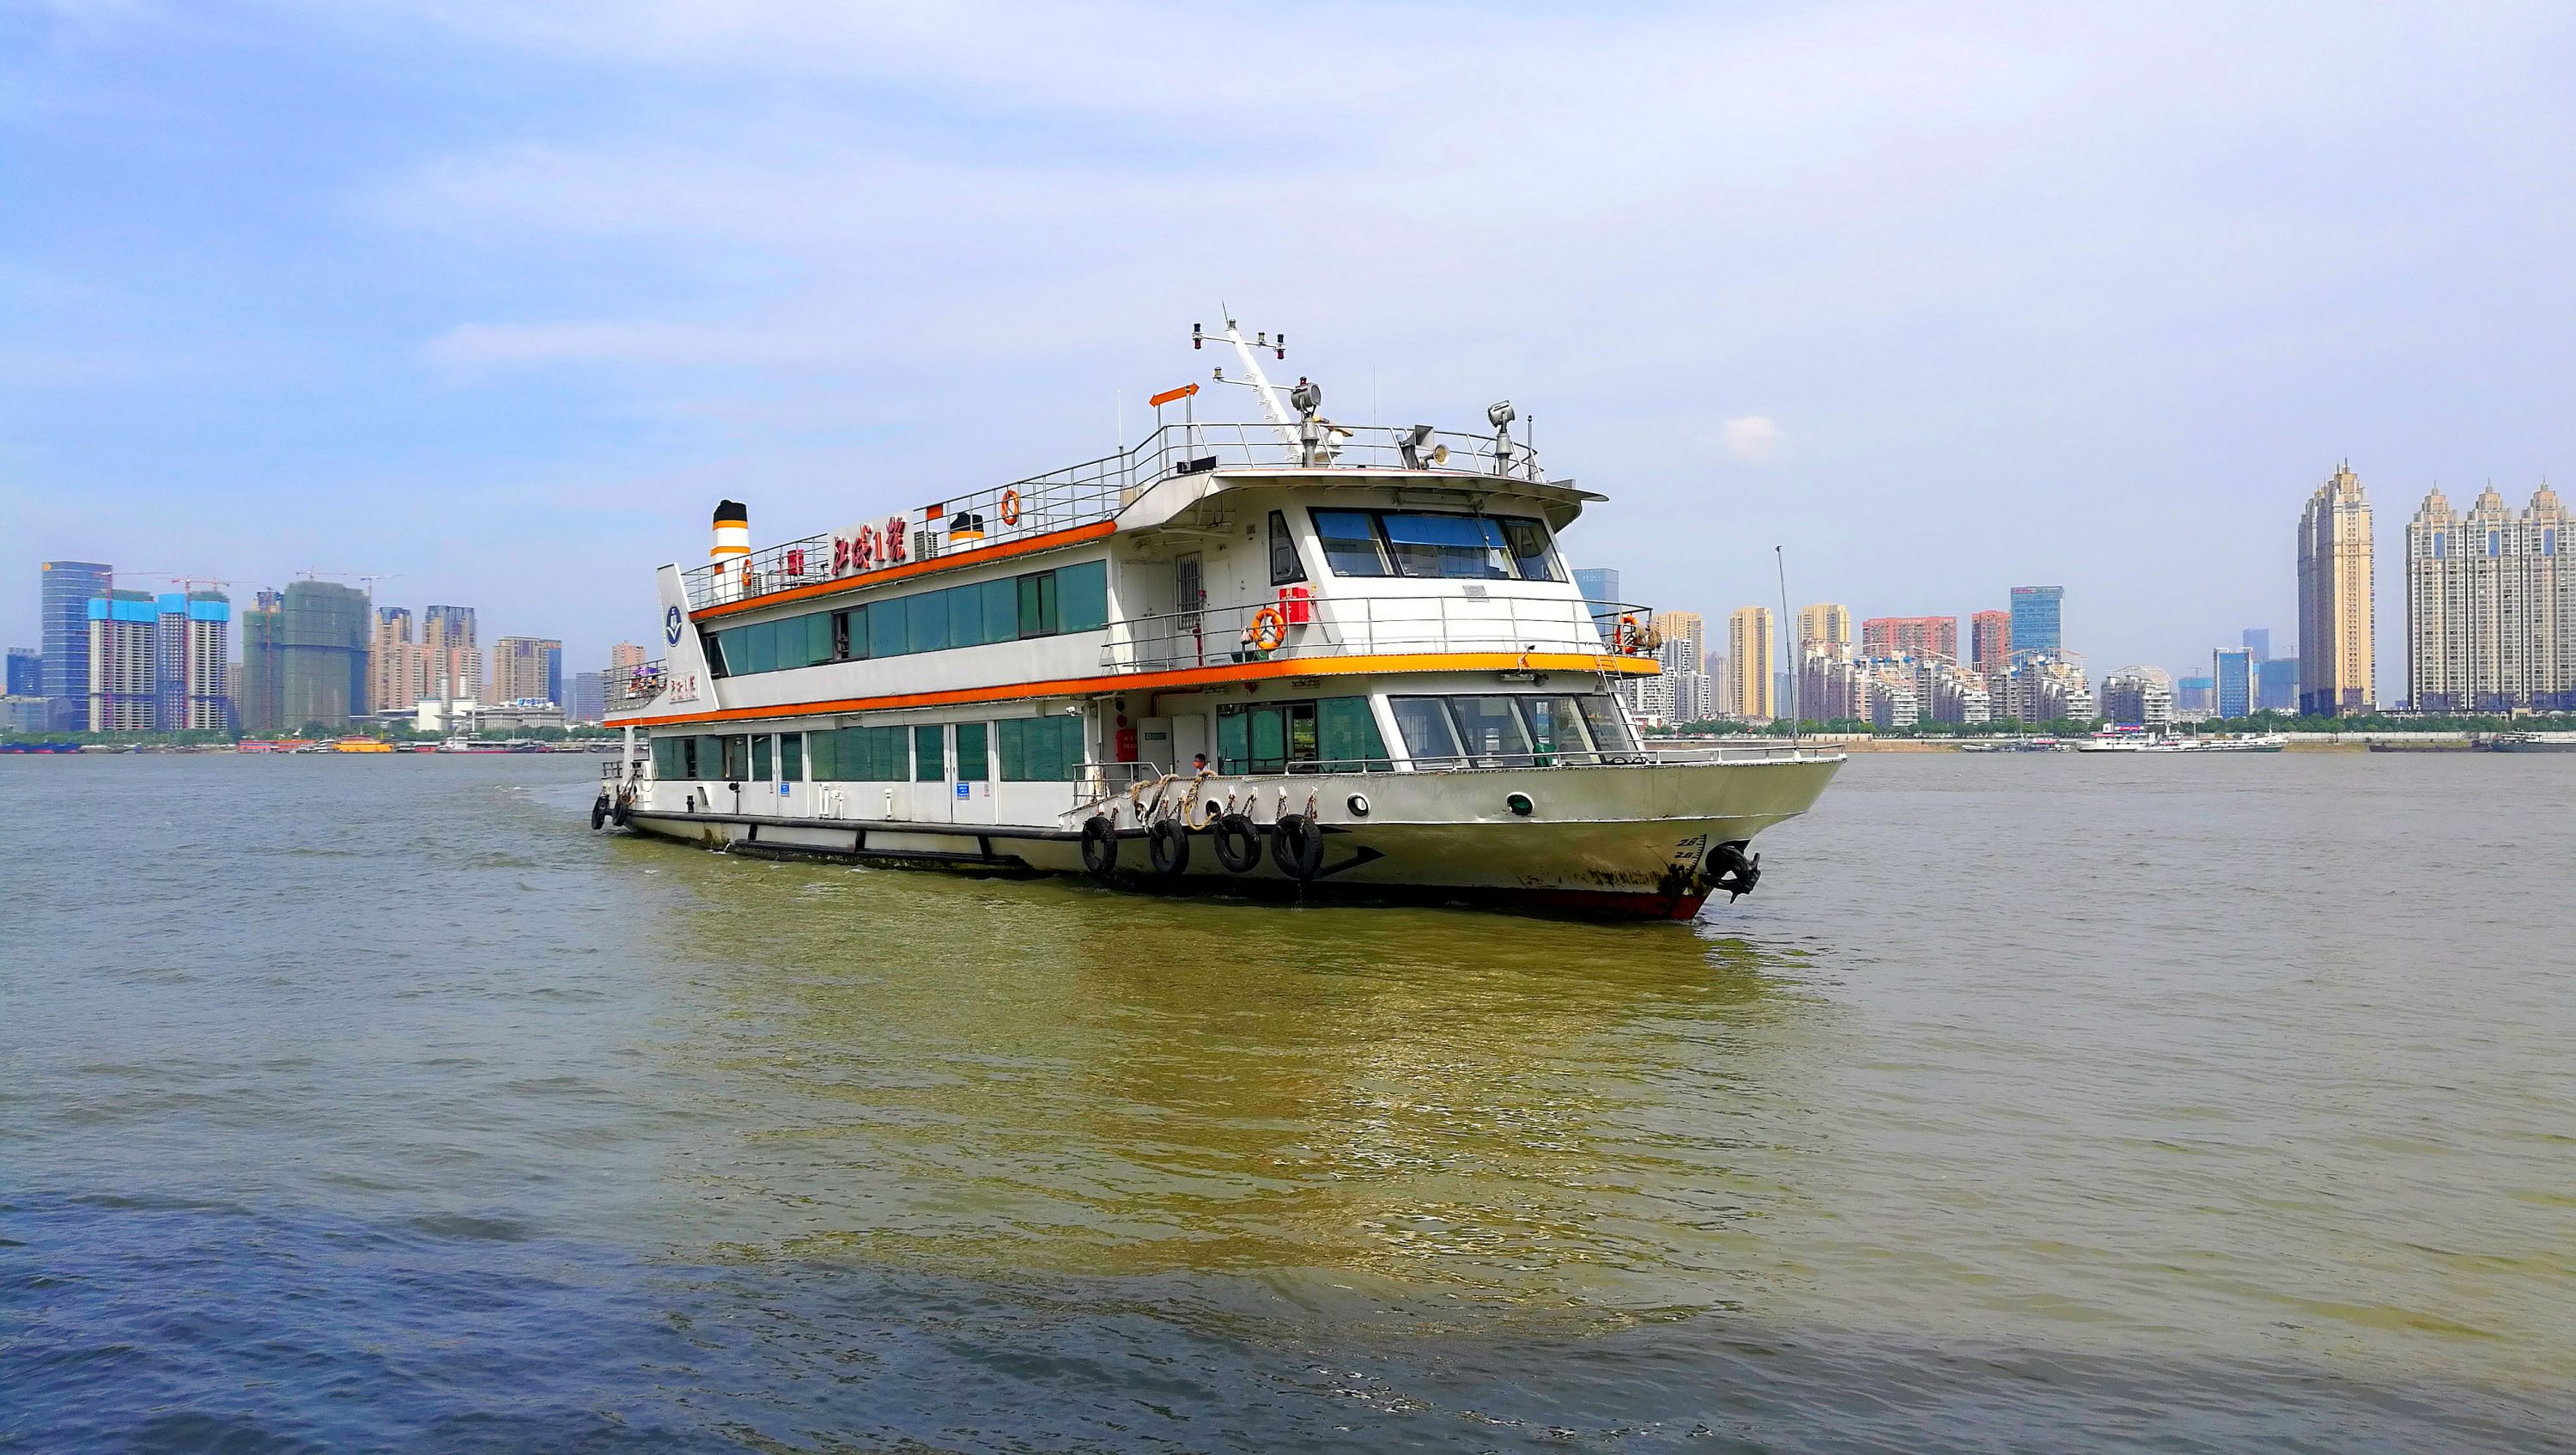 2023武汉关码头游玩攻略,武汉关码头是一大片历史文化...【去哪儿攻略】